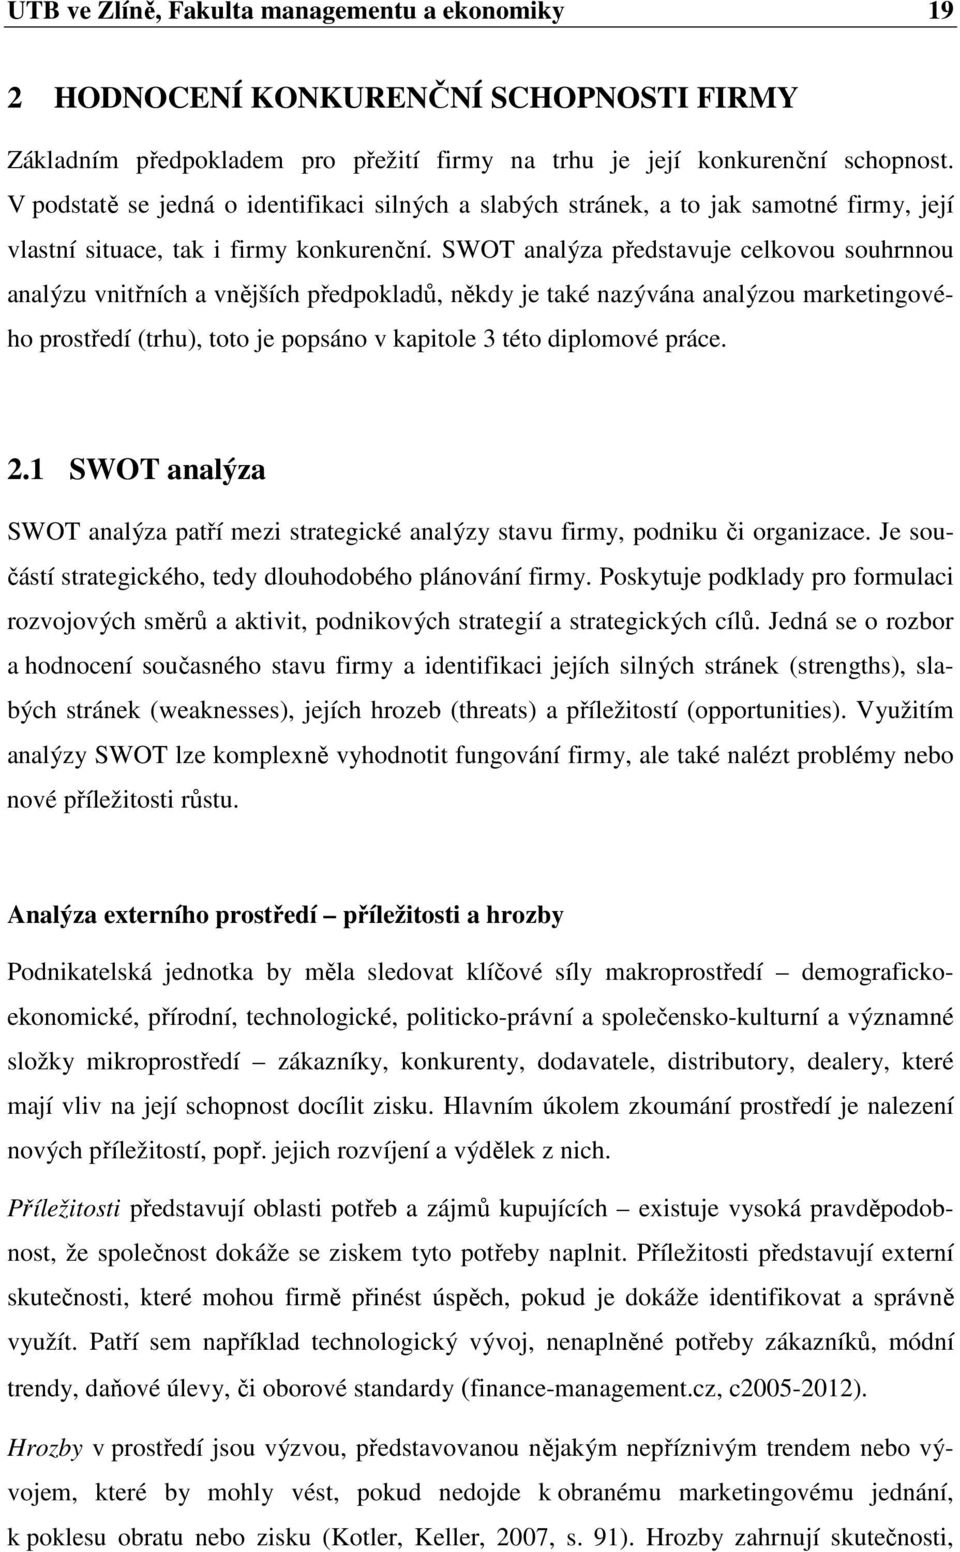 SWOT analýza představuje celkovou souhrnnou analýzu vnitřních a vnějších předpokladů, někdy je také nazývána analýzou marketingového prostředí (trhu), toto je popsáno v kapitole 3 této diplomové